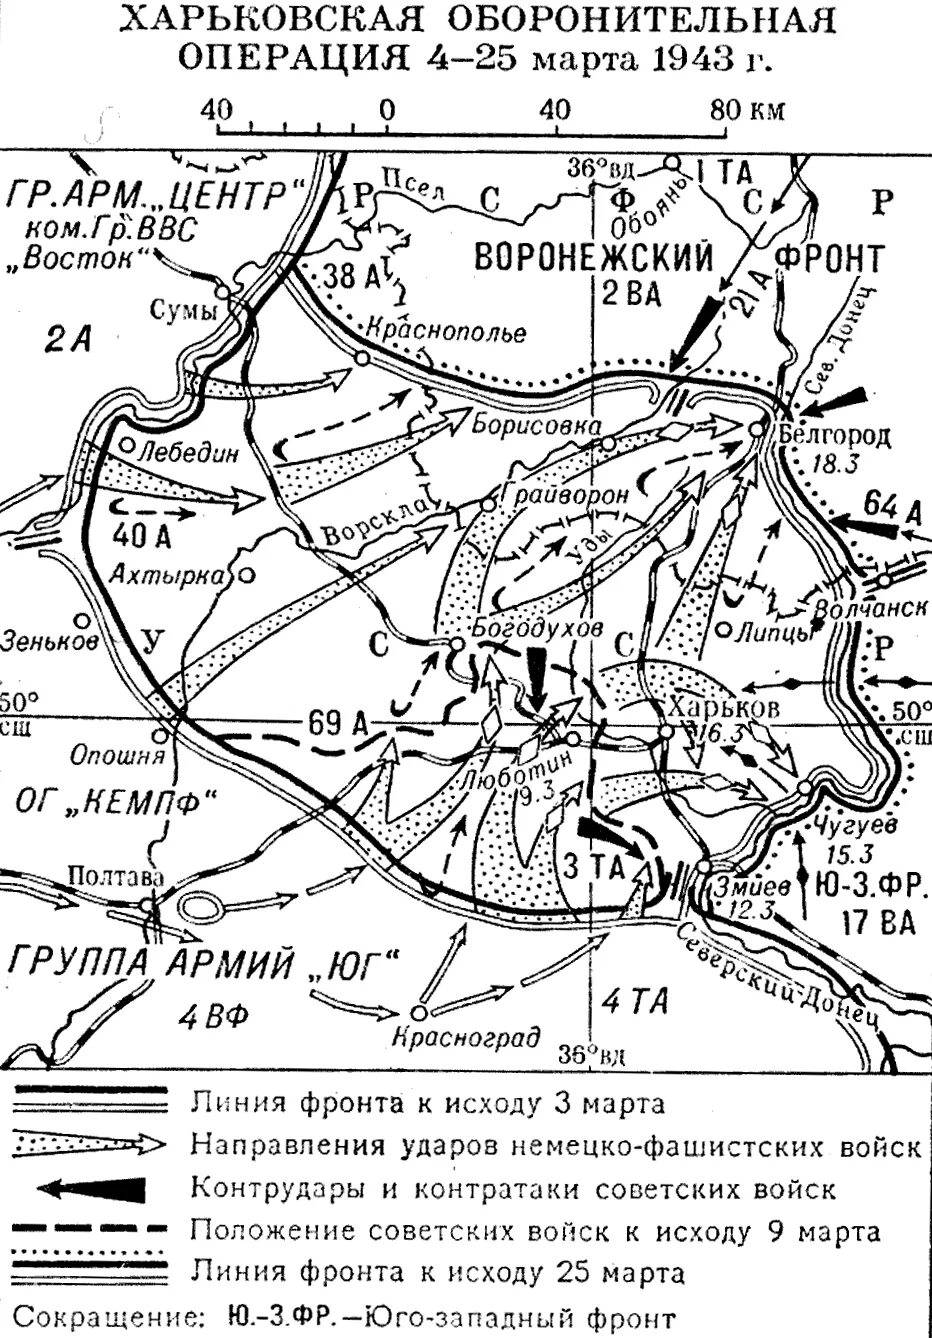 Битва под харьковом. Харьковская наступательная операция 1943 года.